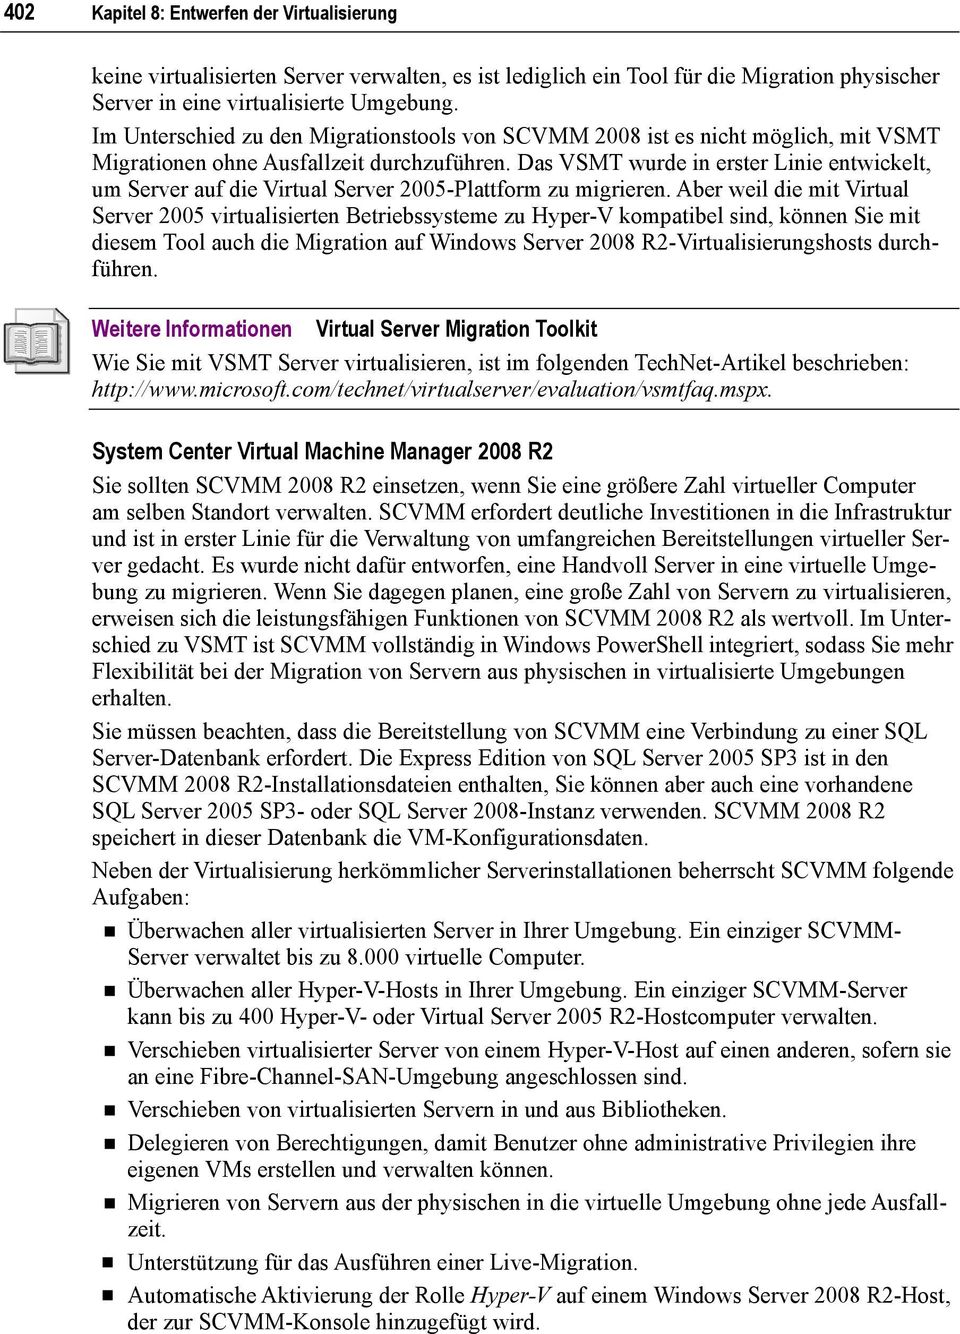 Das VSMT wurde in erster Linie entwickelt, um Server auf die Virtual Server 2005-Plattform zu migrieren.